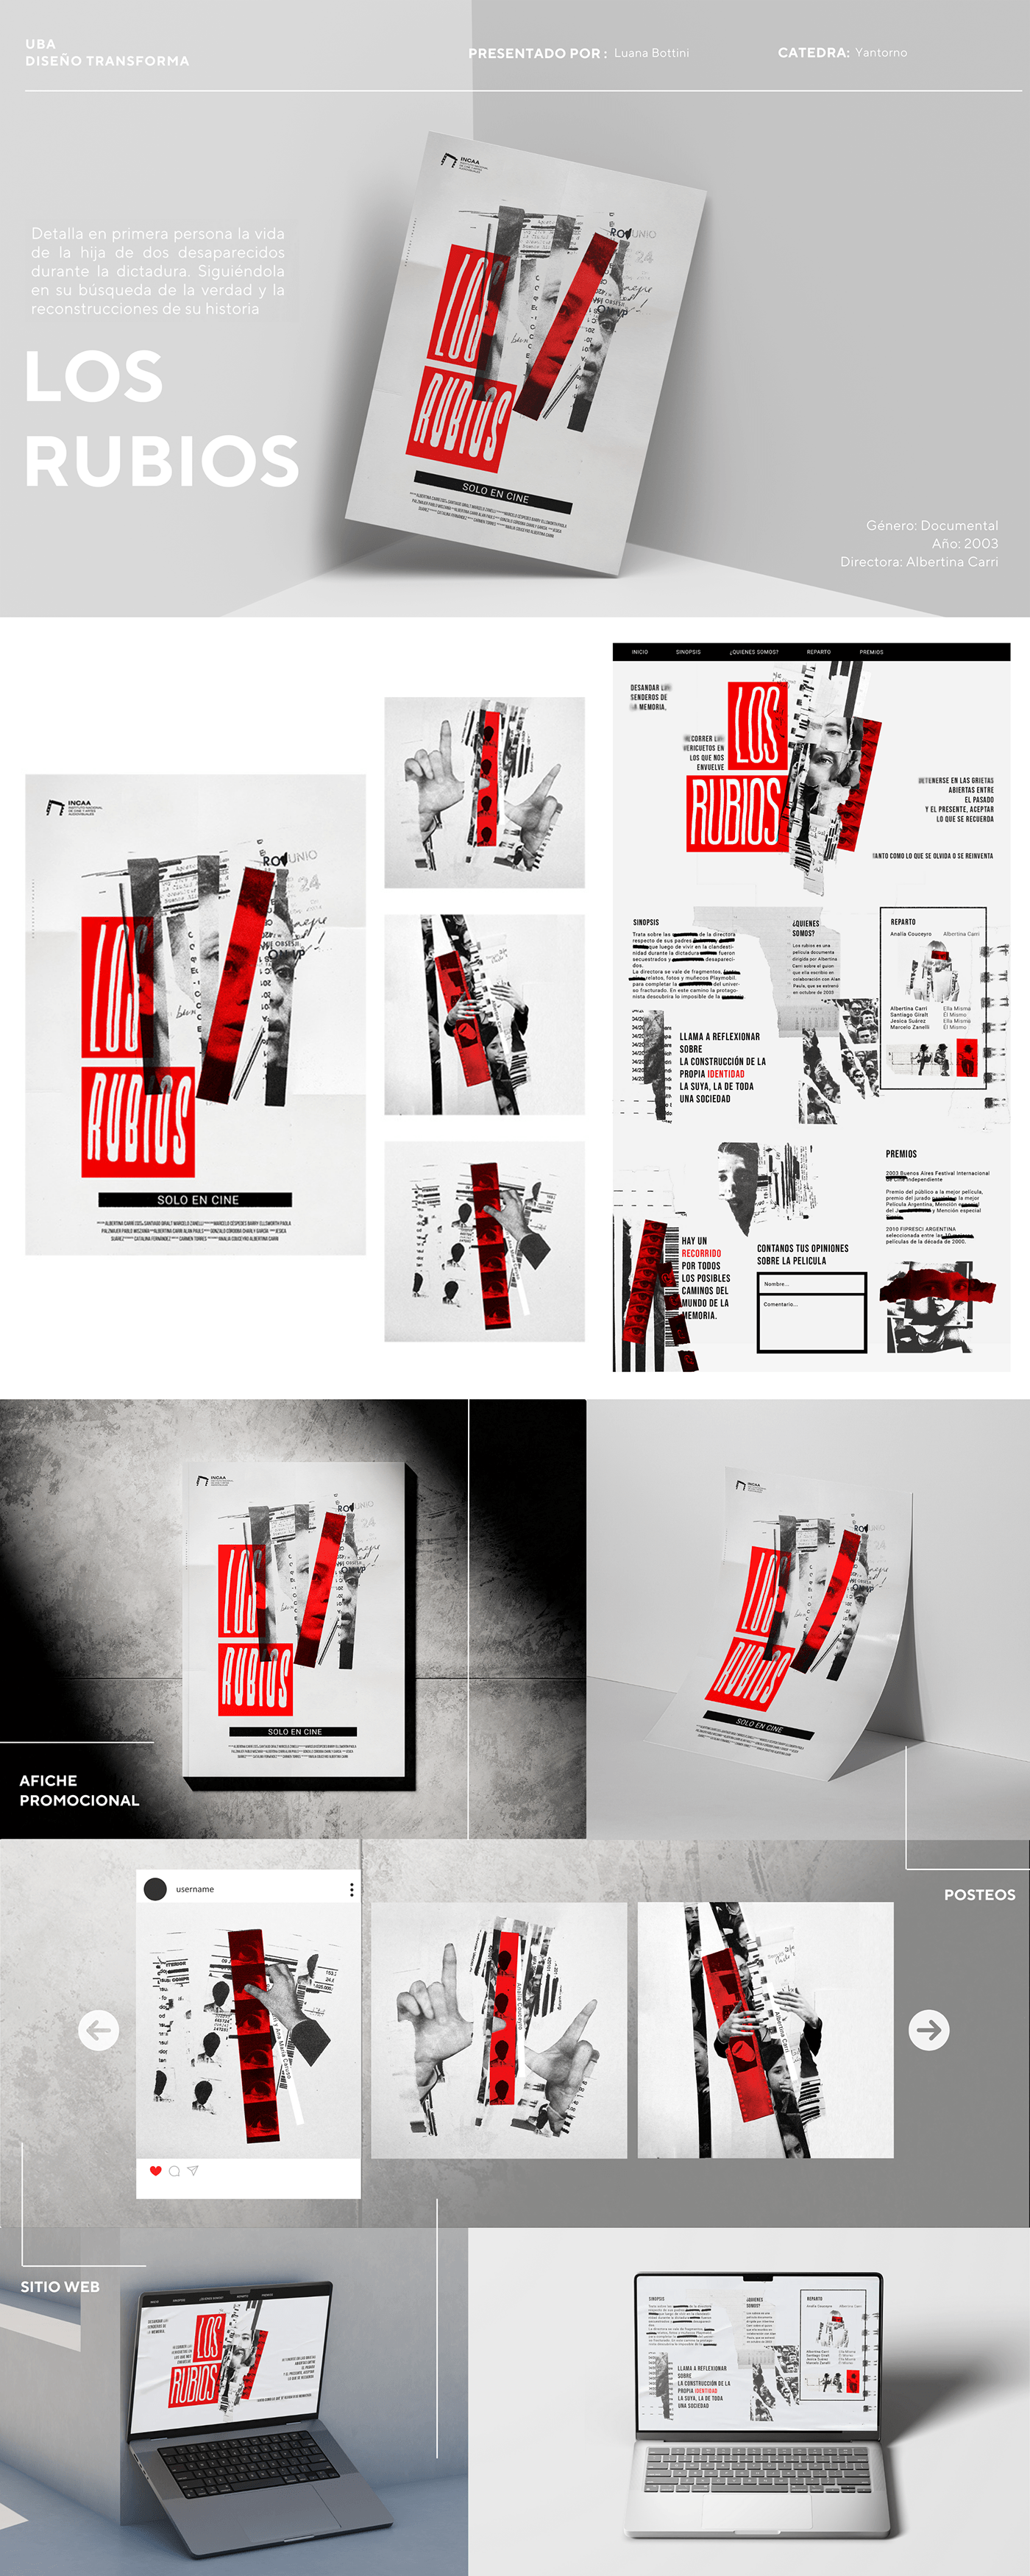 fadu diseño gráfico Poster Design sitio web posteo sistema visual rojo sistema de identidad sistema gráfico Yantorno